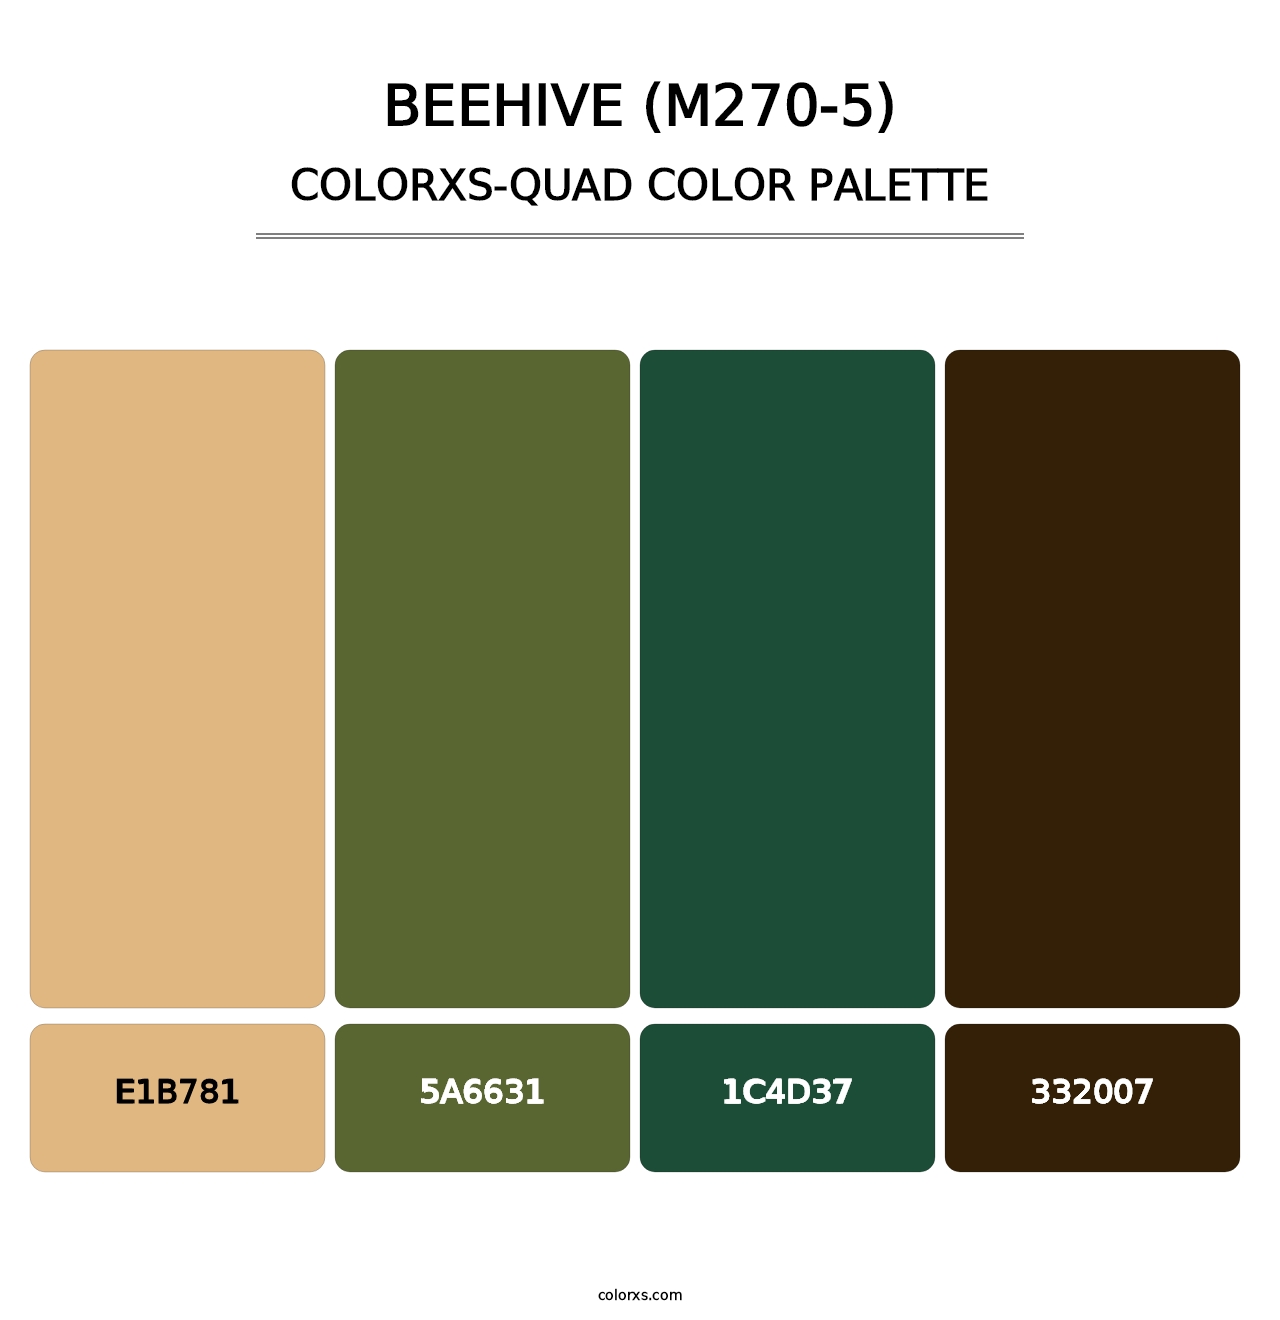 Beehive (M270-5) - Colorxs Quad Palette